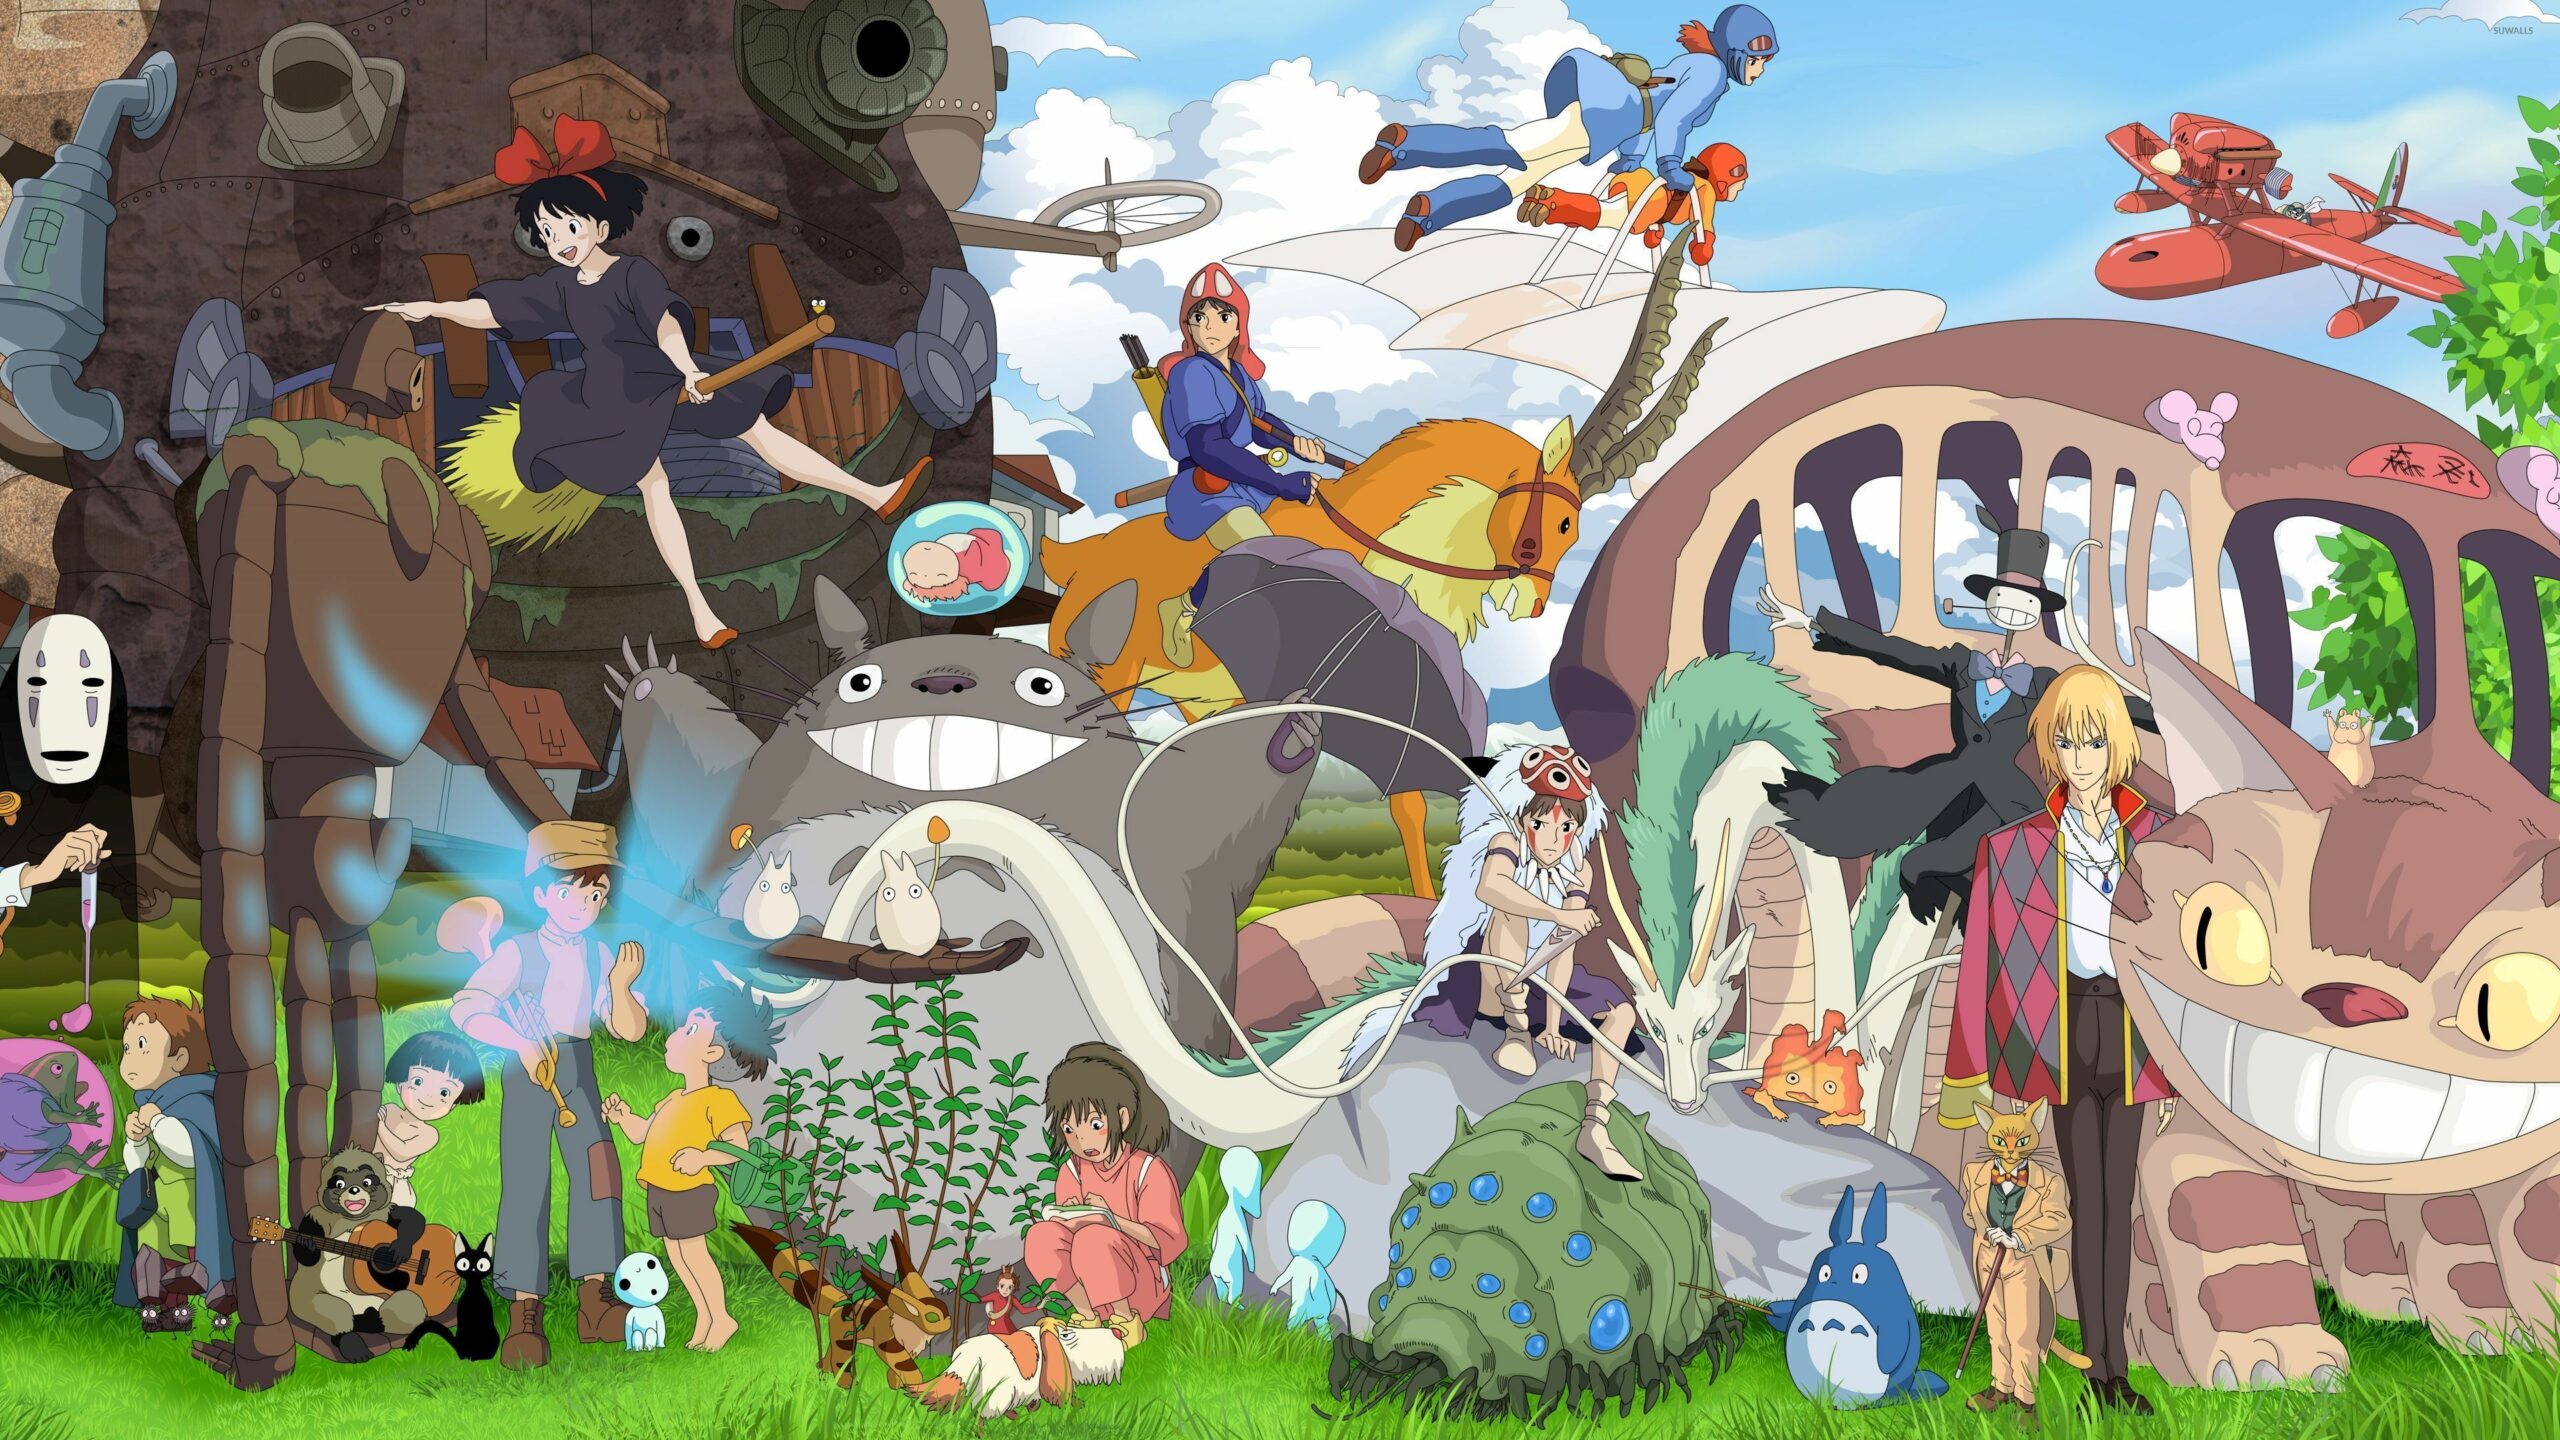 Studio Ghibli là một trong những hãng sản xuất phim hoạt hình nổi tiếng nhất trong lịch sử phim ảnh. Với những câu chuyện đầy màu sắc và hình ảnh đẹp tuyệt vời, các bộ phim của Studio Ghibli thật sự là một điểm hẹn không thể bỏ qua cho những người yêu thích hoạt hình.